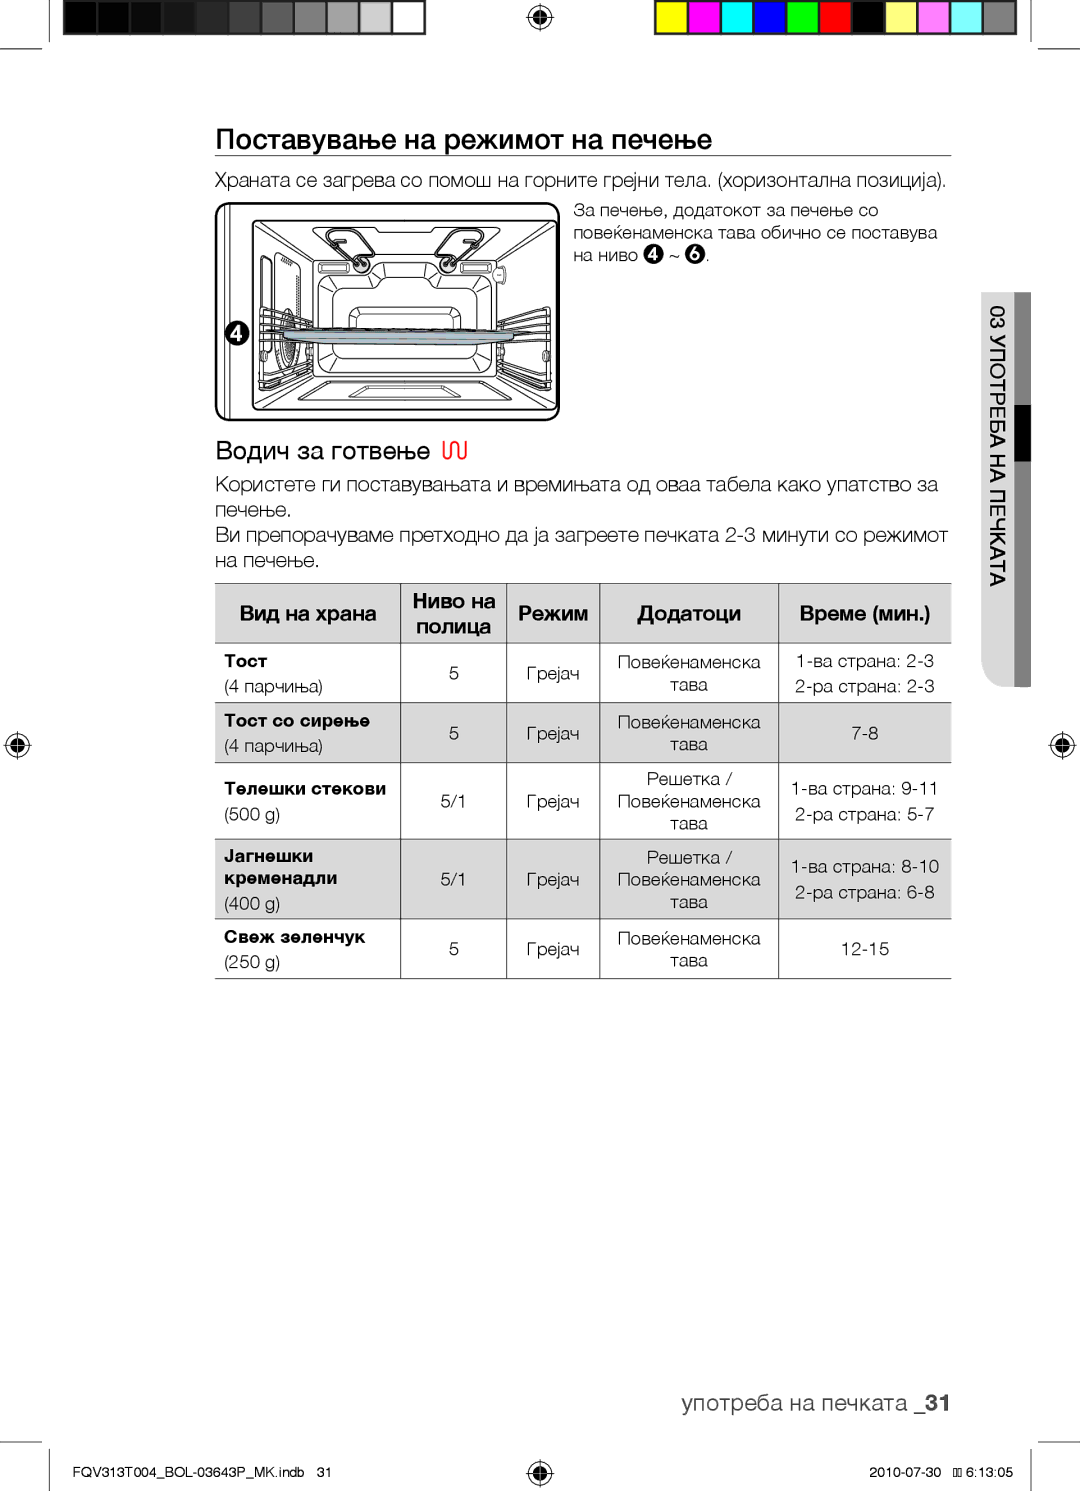 Samsung FQV313T004/BOL manual Поставување на режимот на печење, Вид на храна Ниво на Режим Додатоци Време мин Полица 